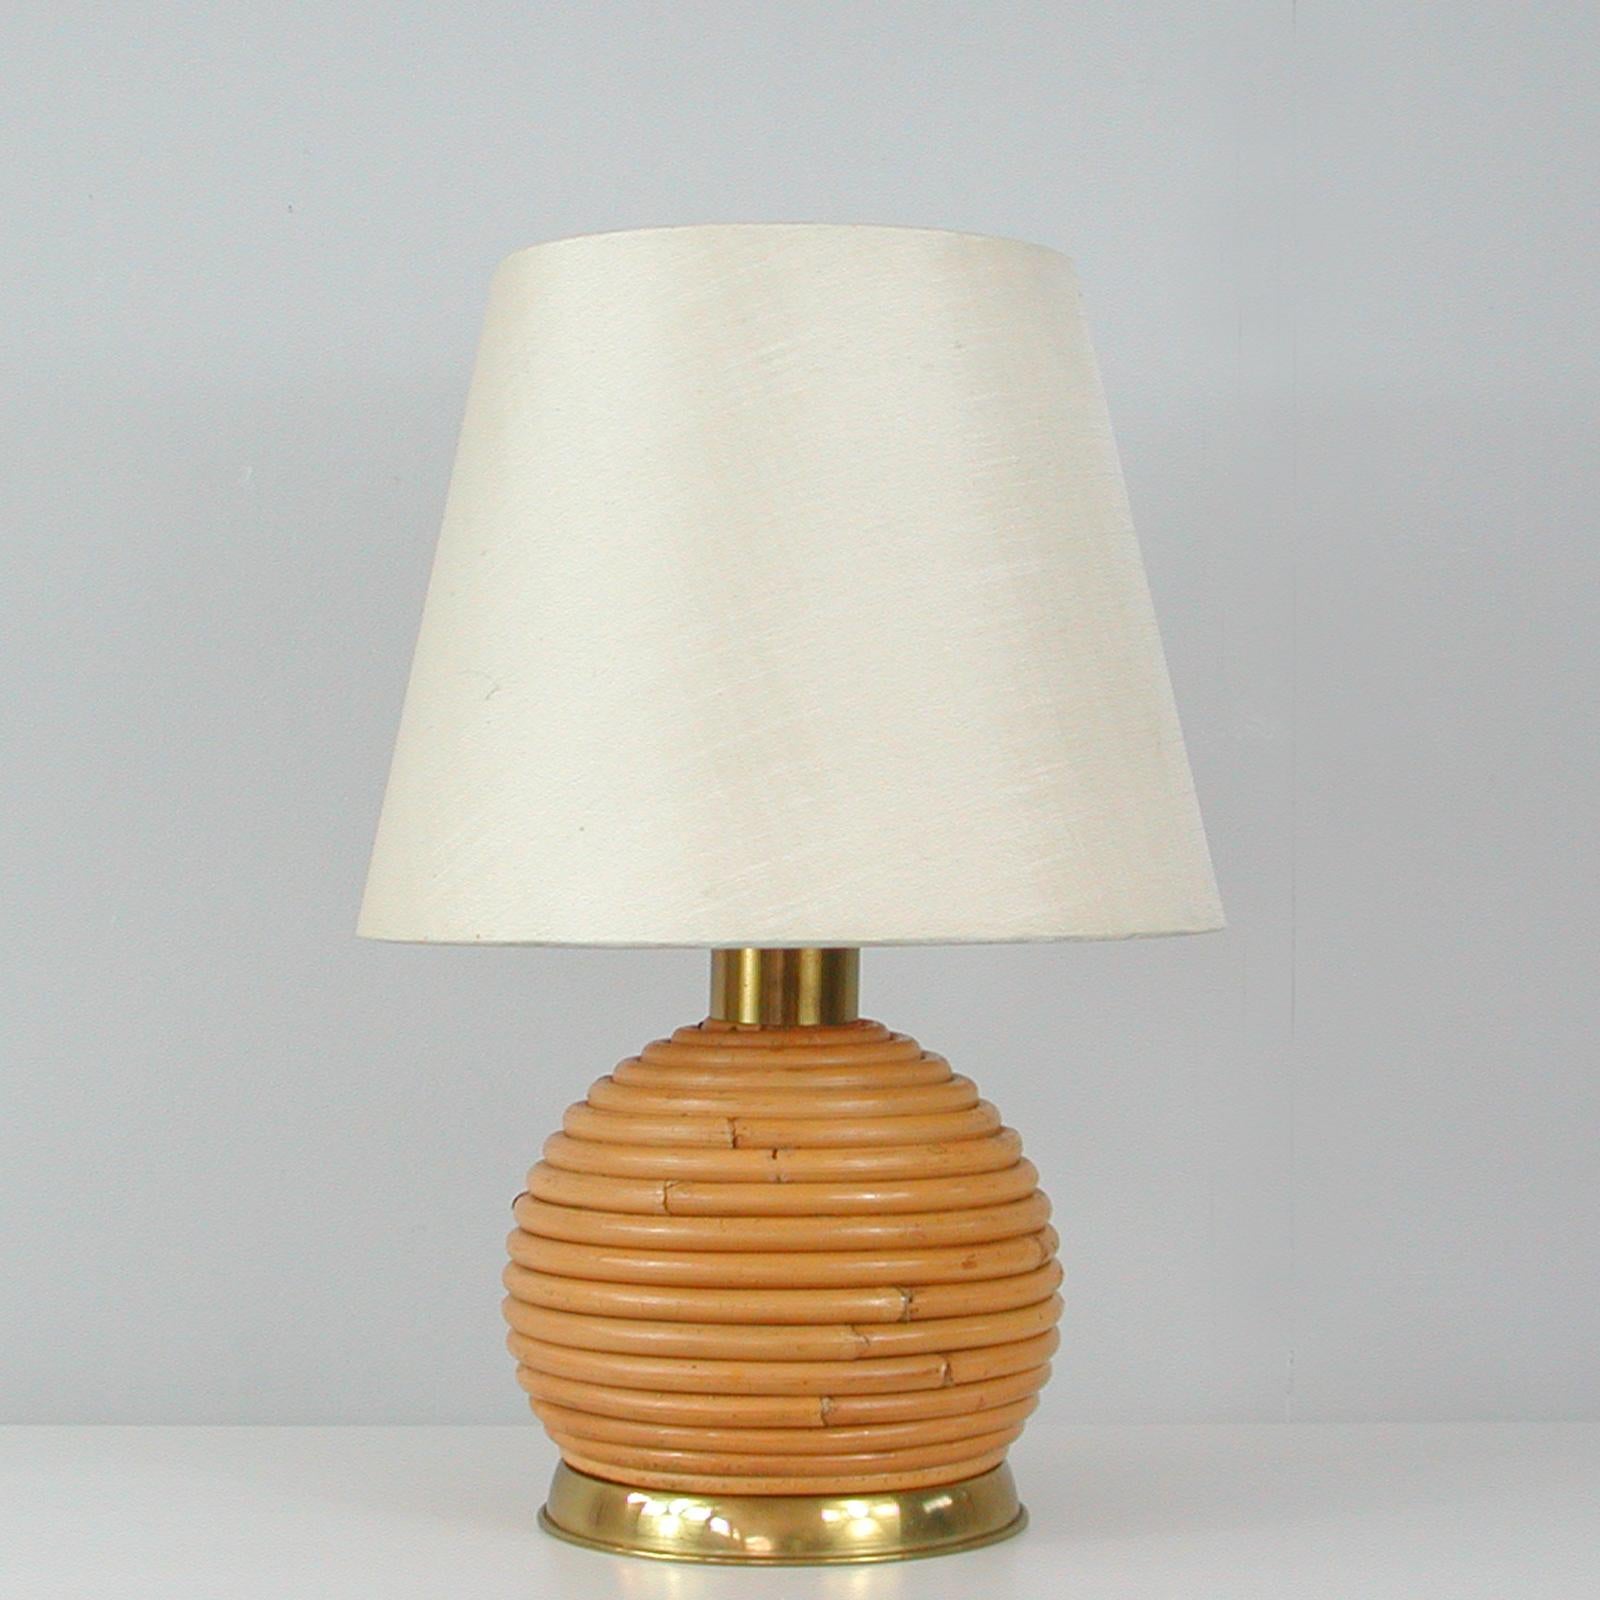 Cette lampe de table inhabituelle a été conçue et fabriquée en Italie dans les années 1960 et est attribuée à Vivai del Sud. Il est doté d'une base en rotin ou en osier en forme de globe et de ferrures en laiton. L'abat-jour original est en soie de